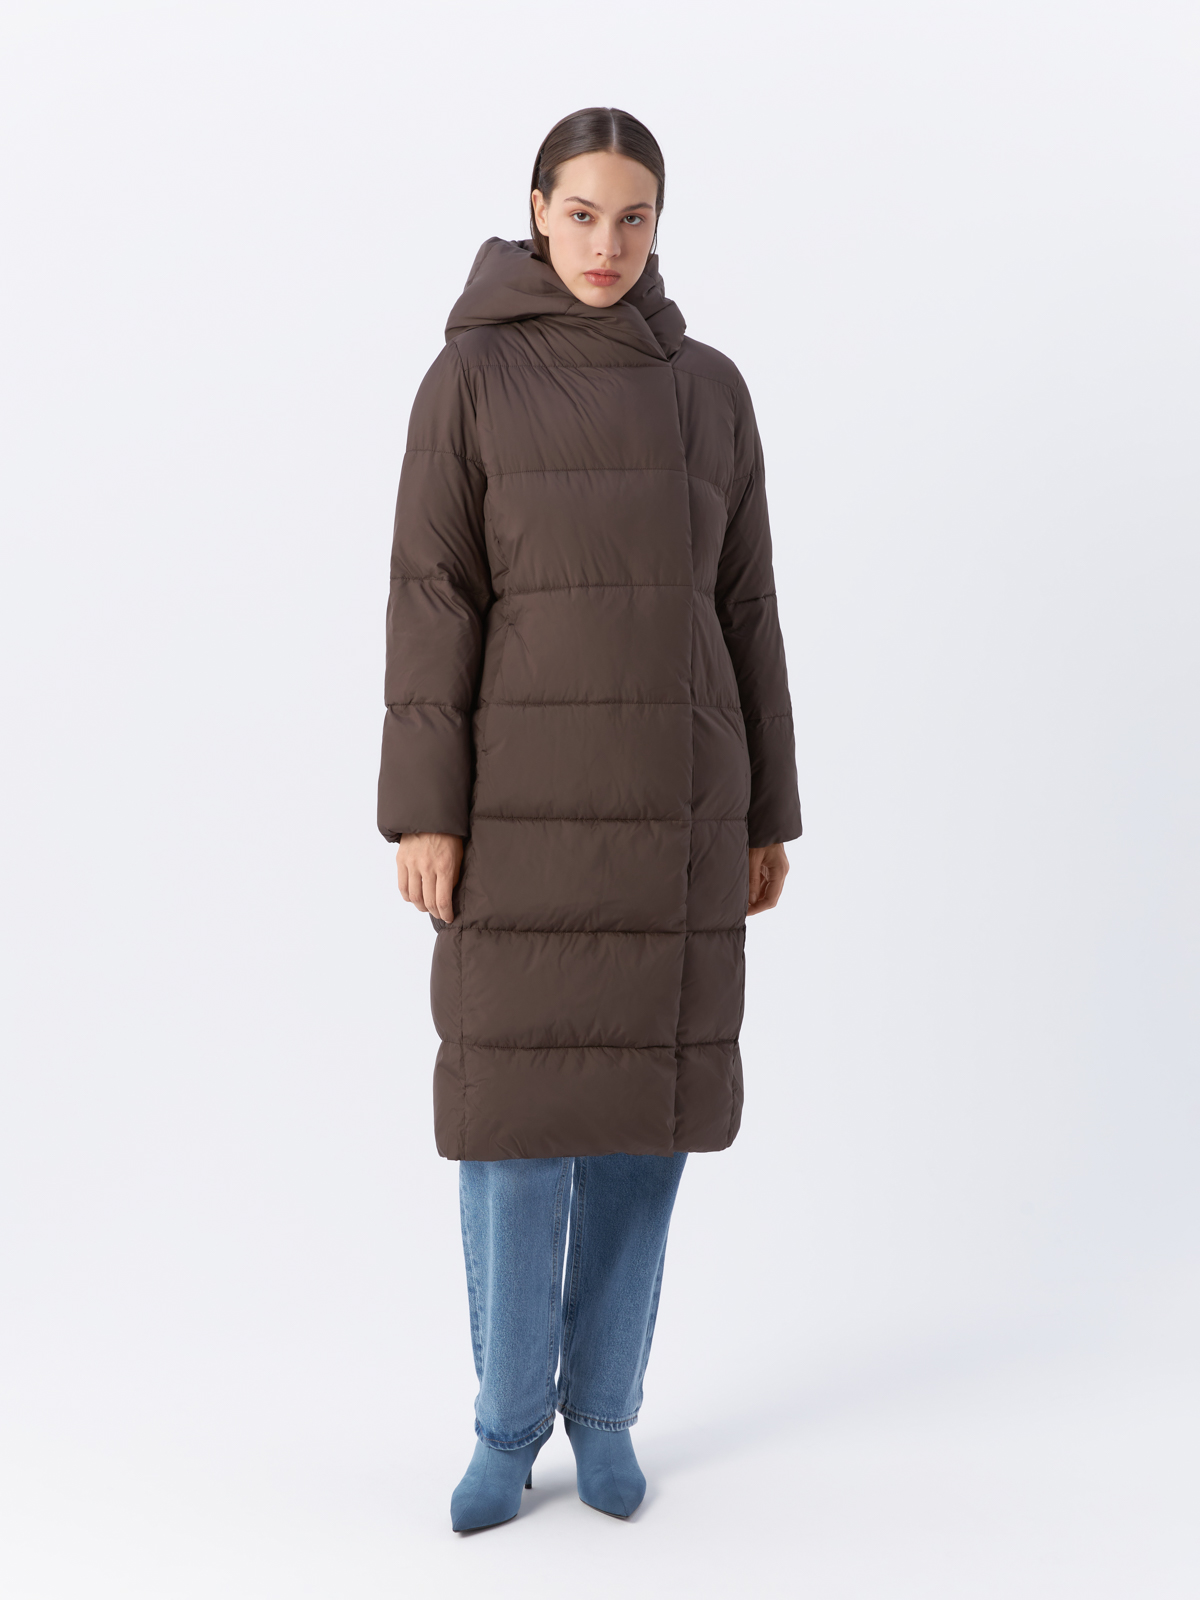 Пальто женское Veralba VEF-2741MW коричневое 44